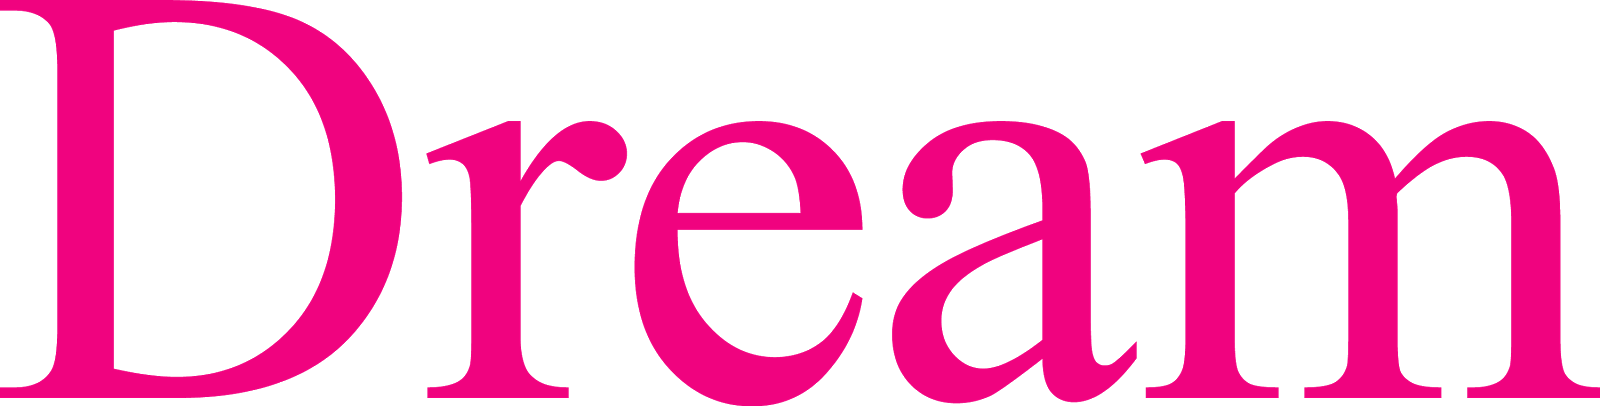 Logodol 全てが高画質 背景透過なアーティストのロゴをお届けするブログ Dream From E Girls の透過ロゴ 5色も作ったよ